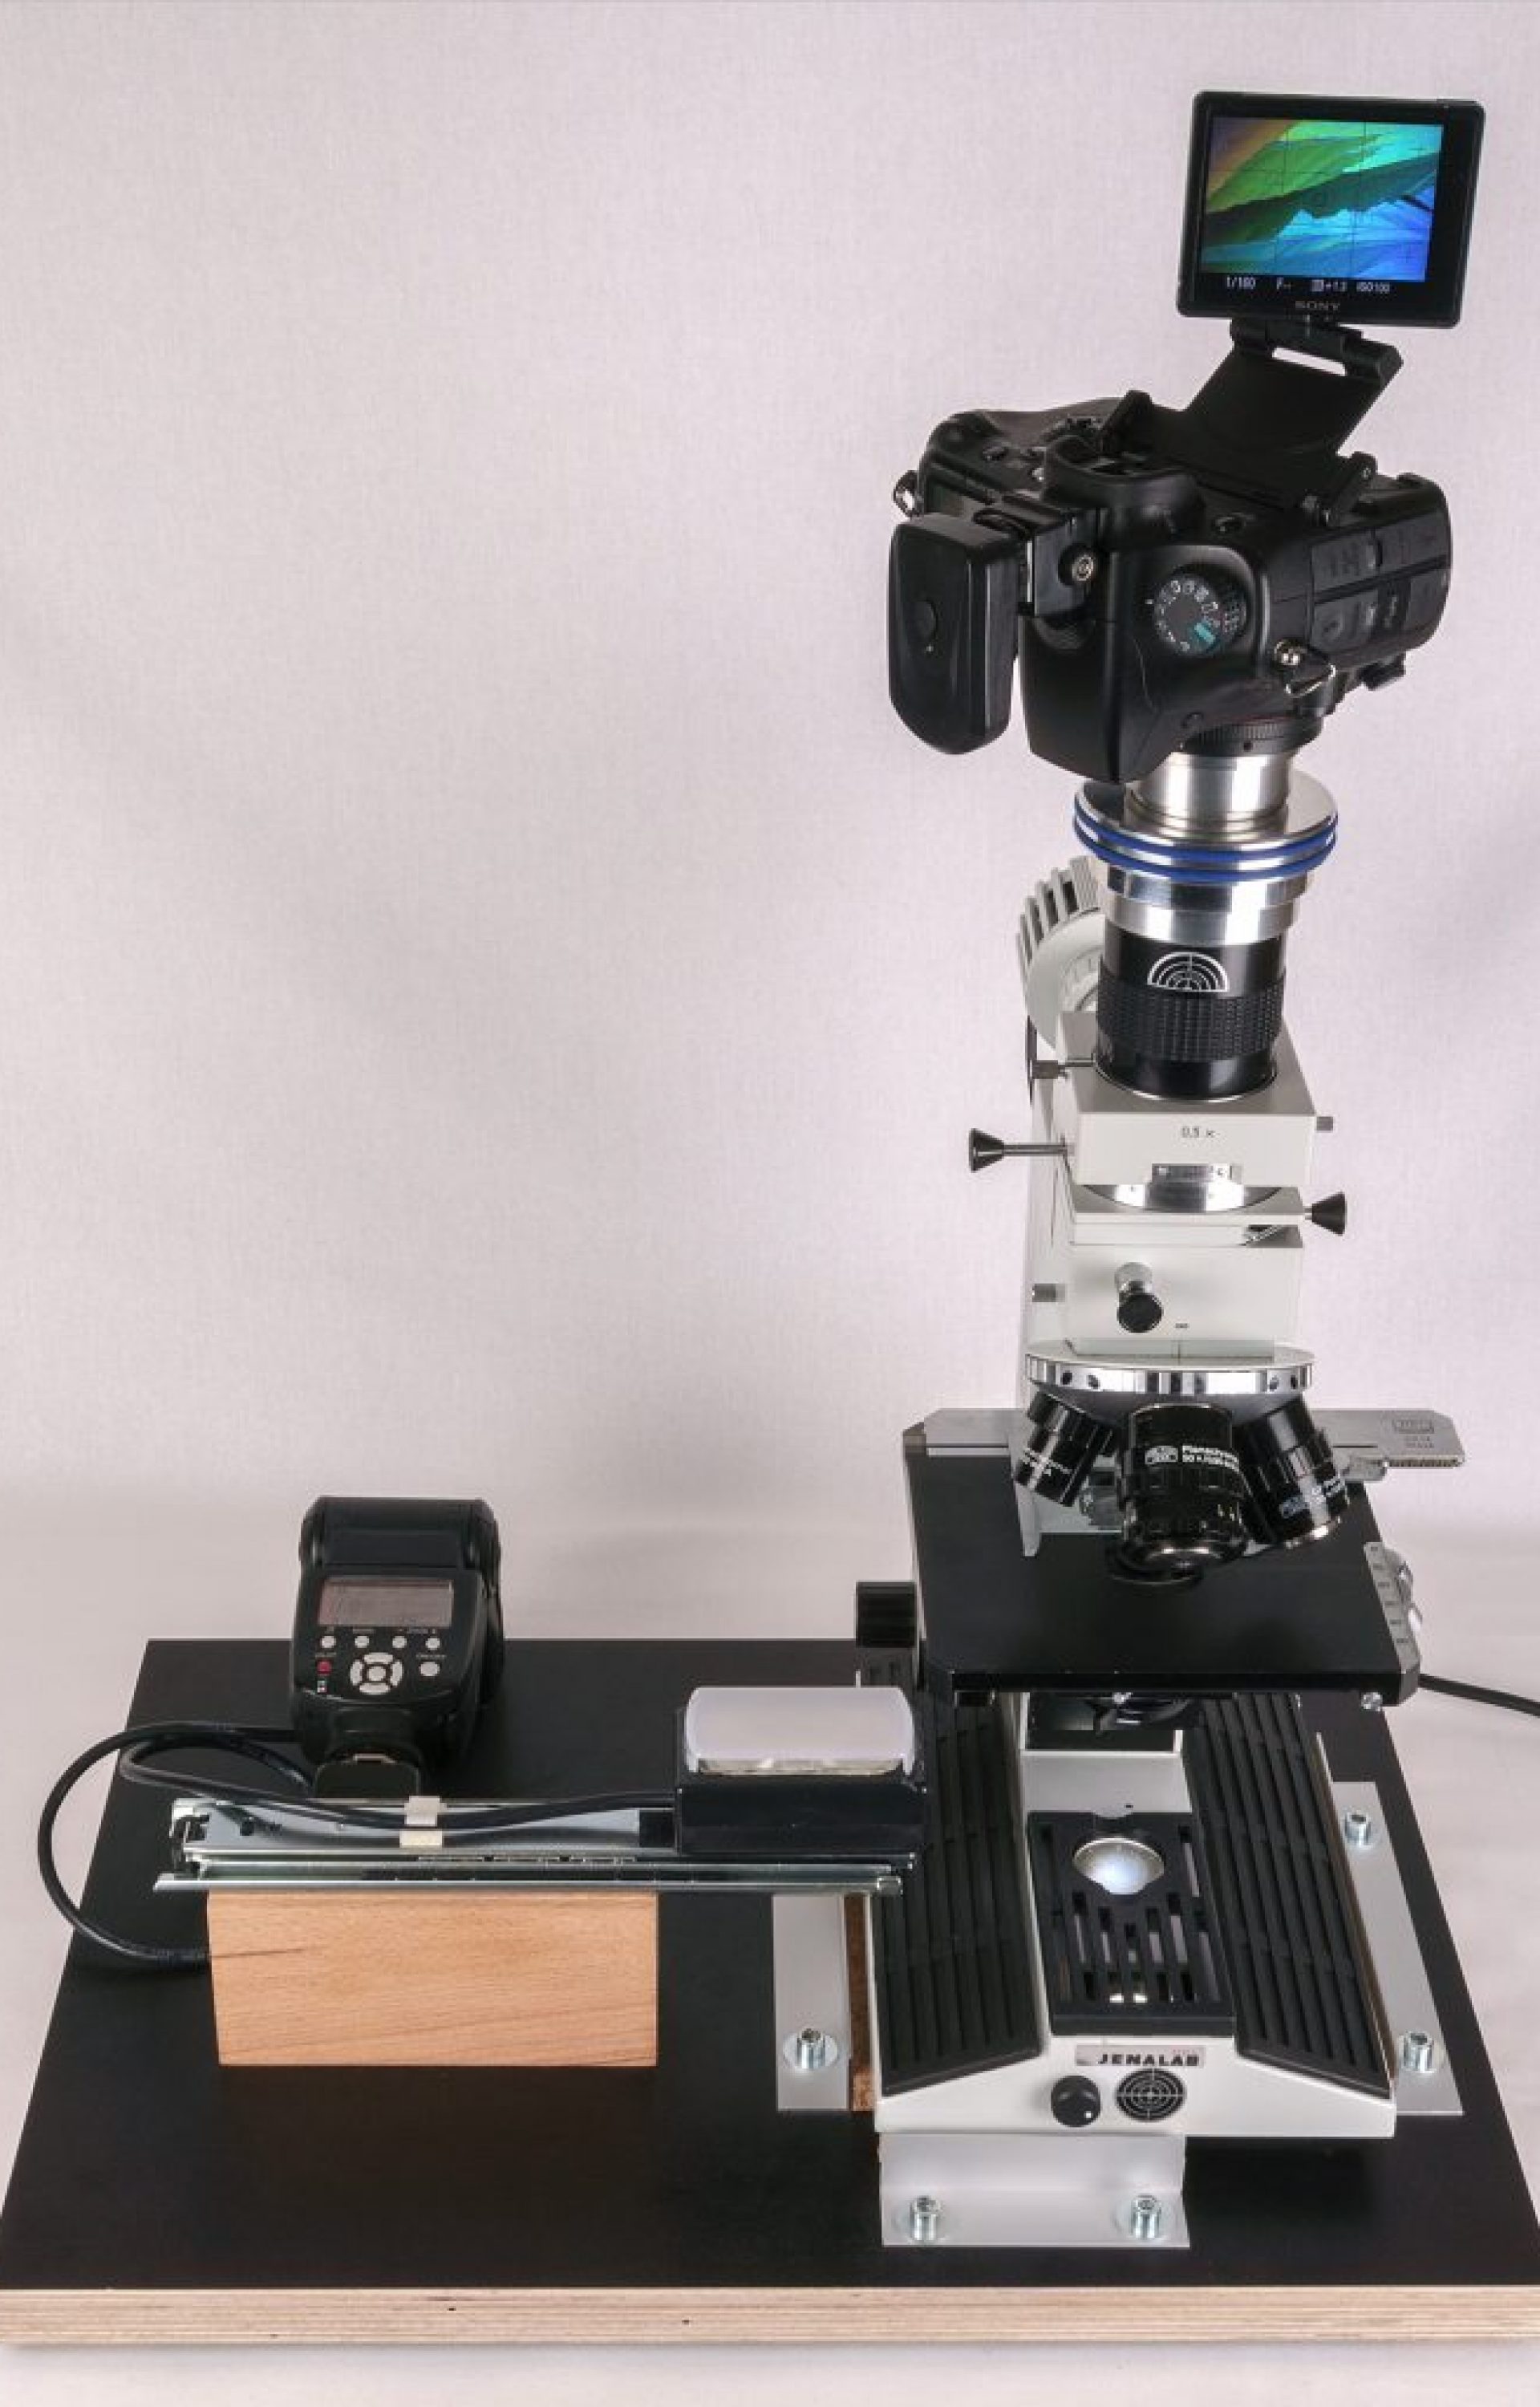 Das Arbeitssetup, ausgestattet mit einem JENALB-Pol und einer Sonderanfertigung der MF-Fotoanpassung APO für die digitale Mikrofotografie von BW-Optik.